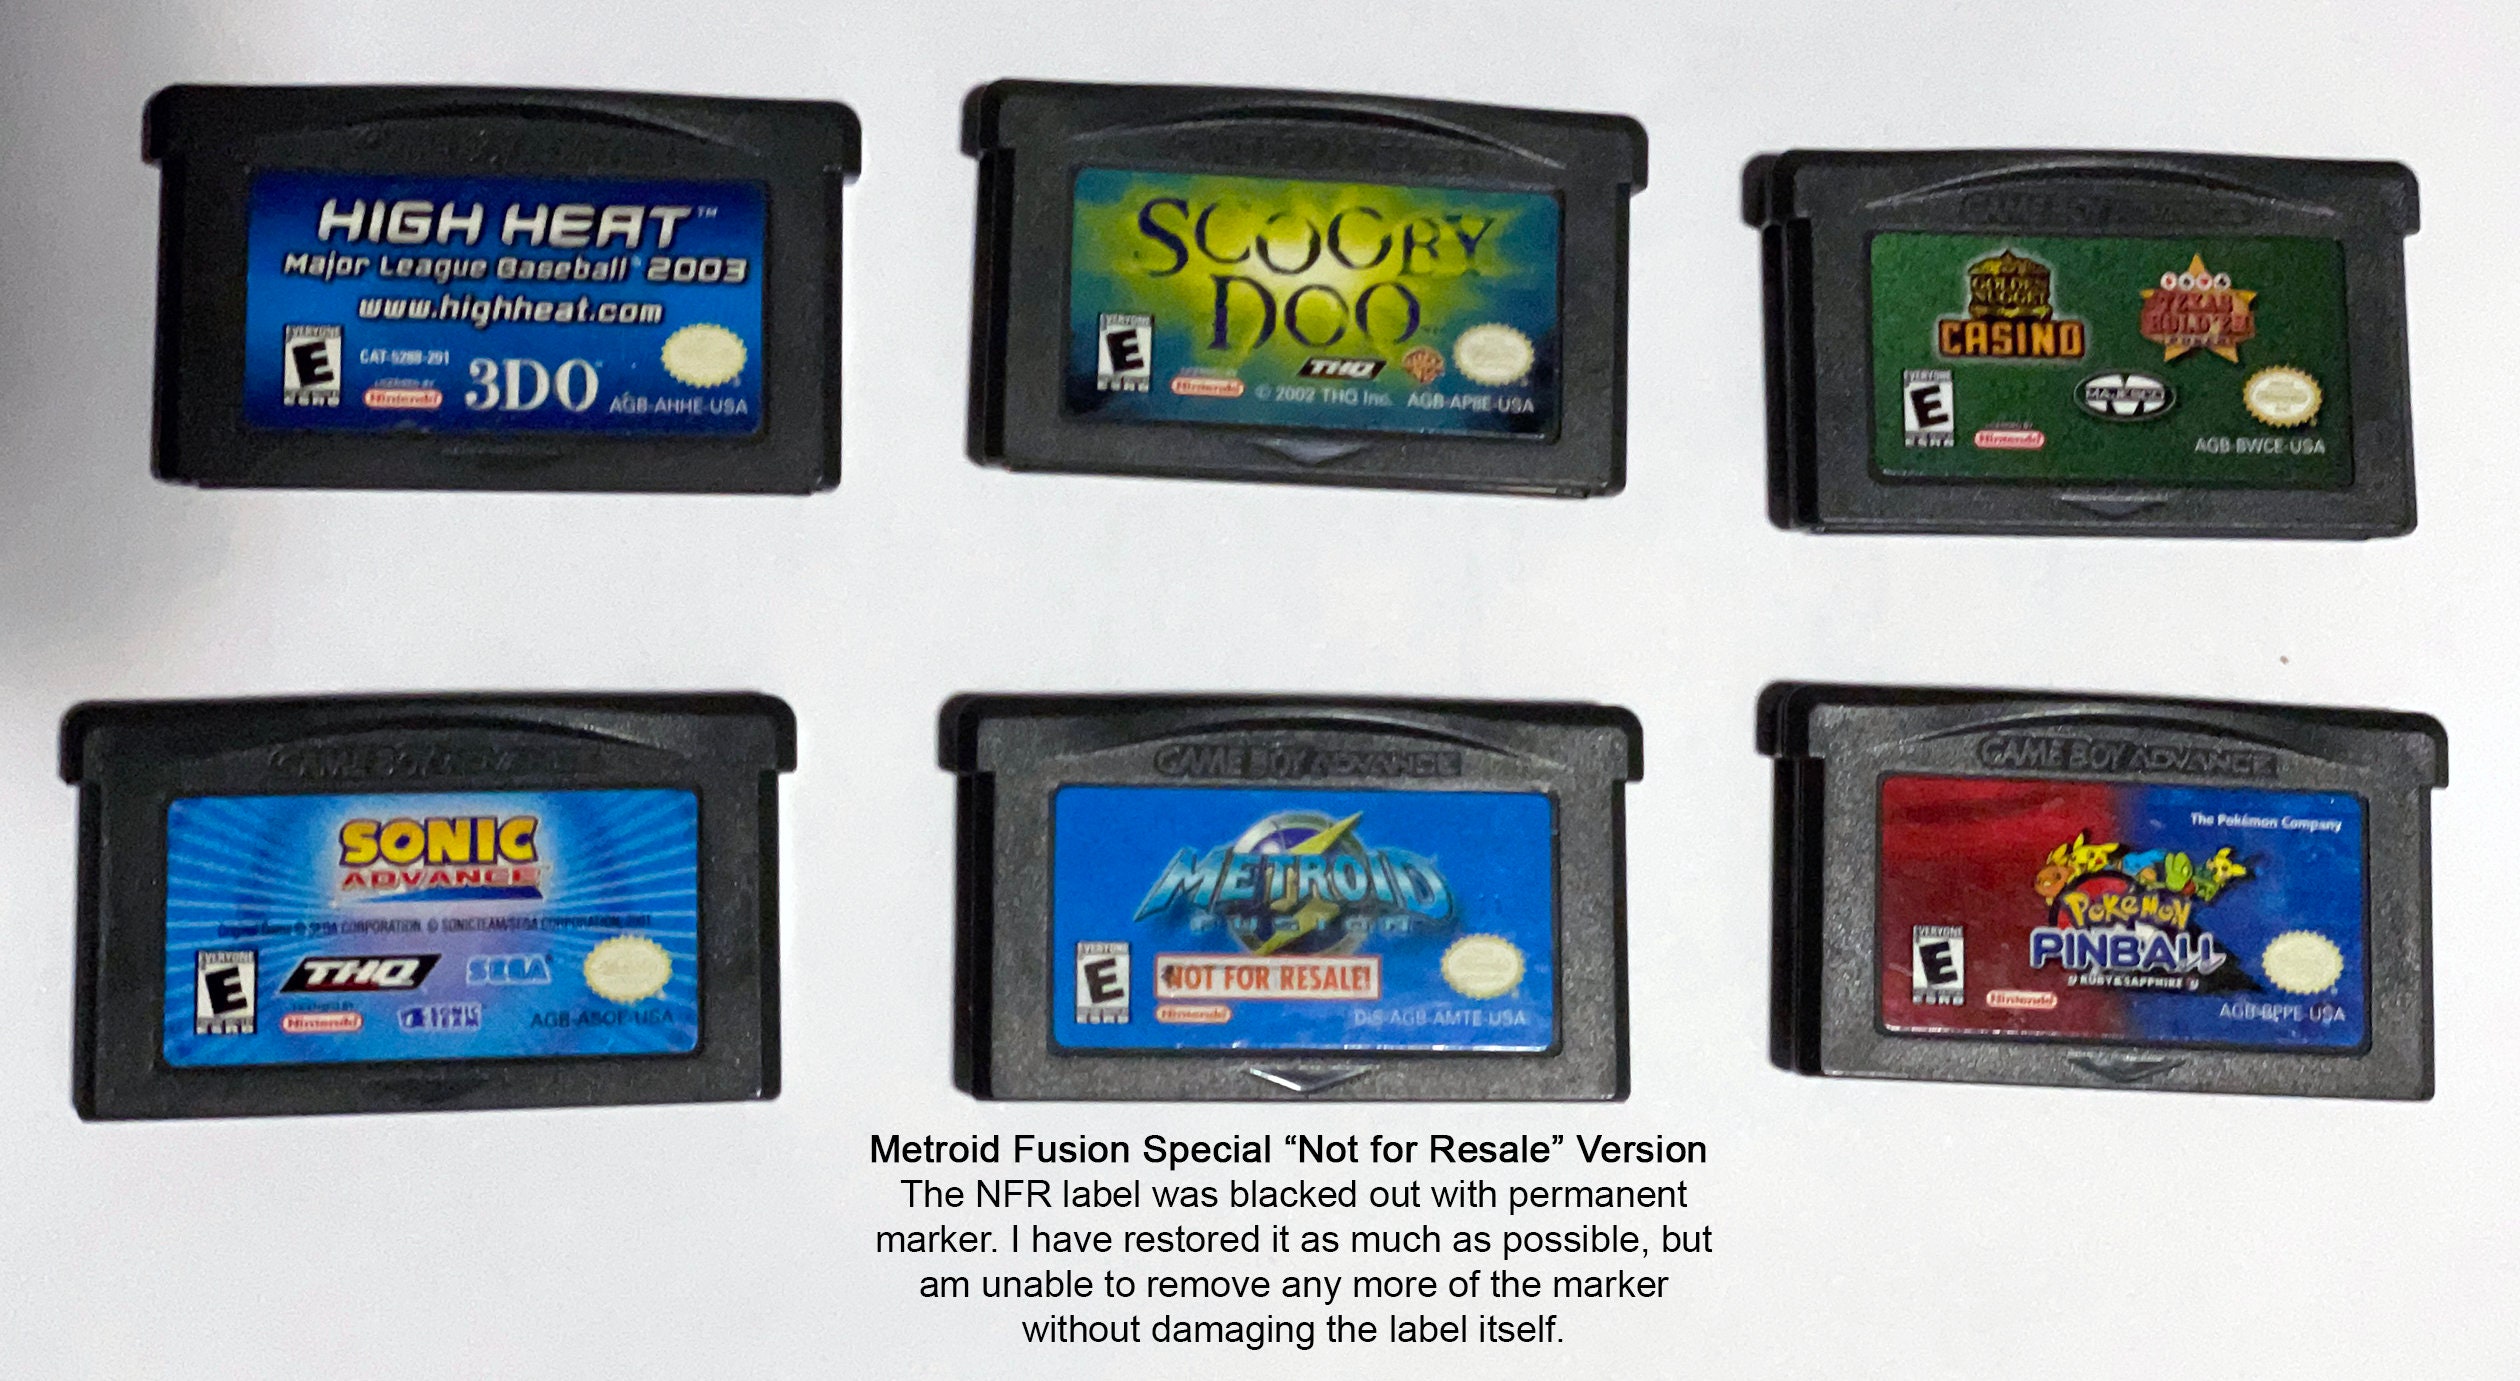 Jeux Gameboy Color et Advance authentiques Cartouches Nintendo OEM